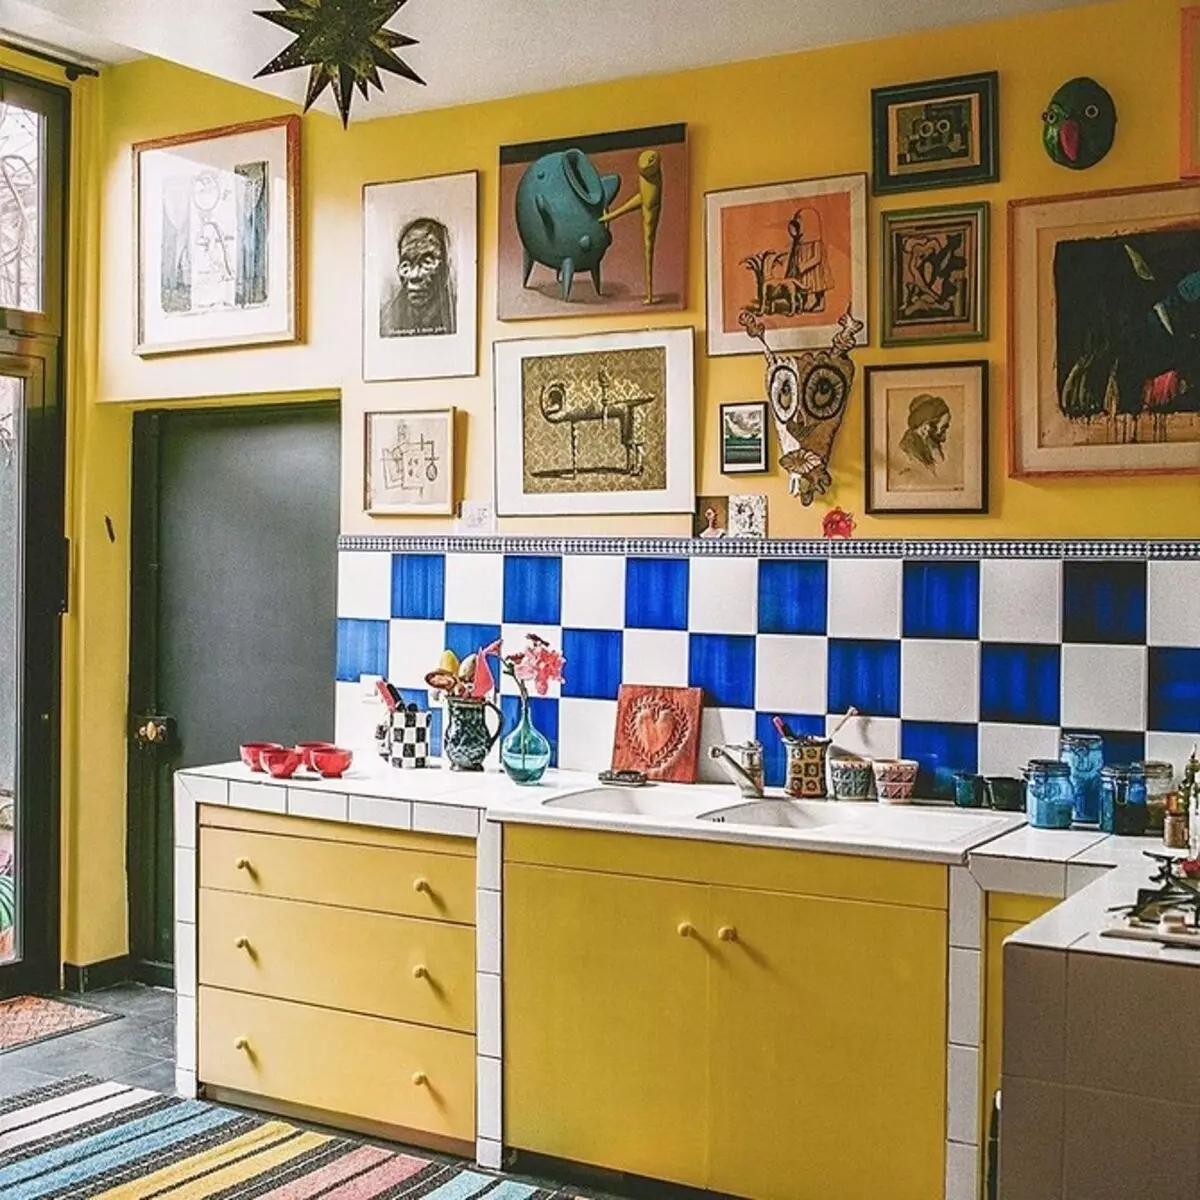 我們繪製了一個黃色廚房的內部：最佳顏色組合和84張照片 3585_75